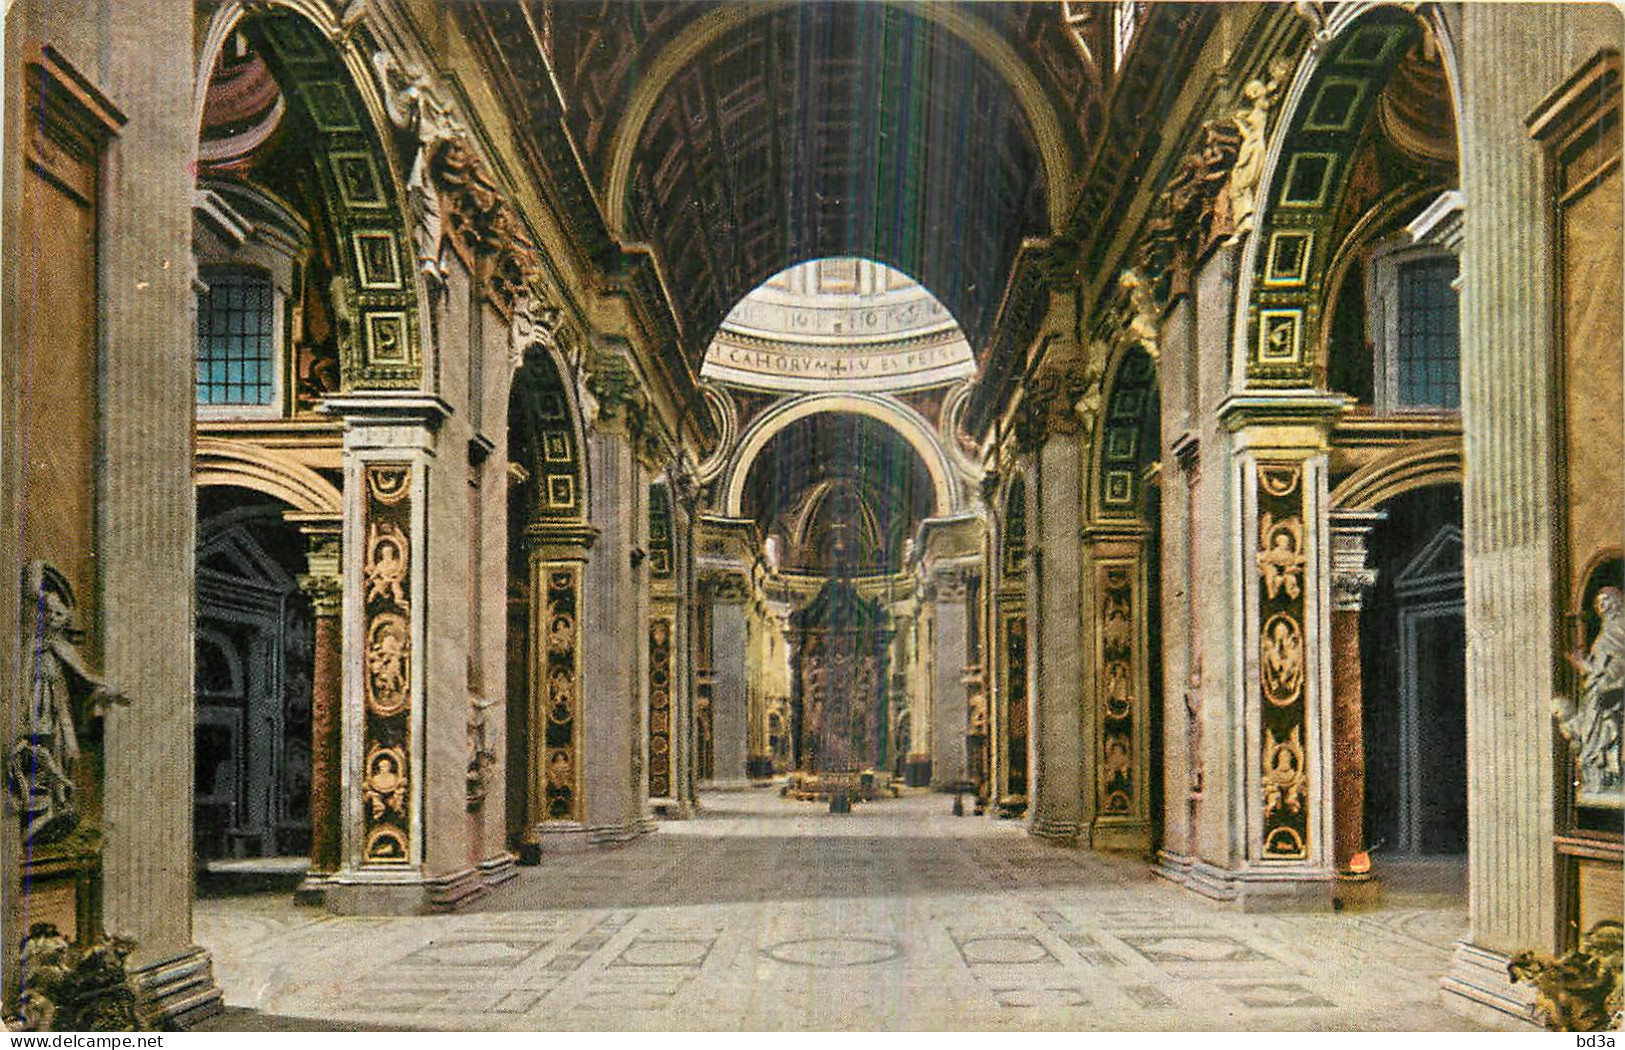 ROMA VATICAN Basilica Di S,Pietro  - Vatican